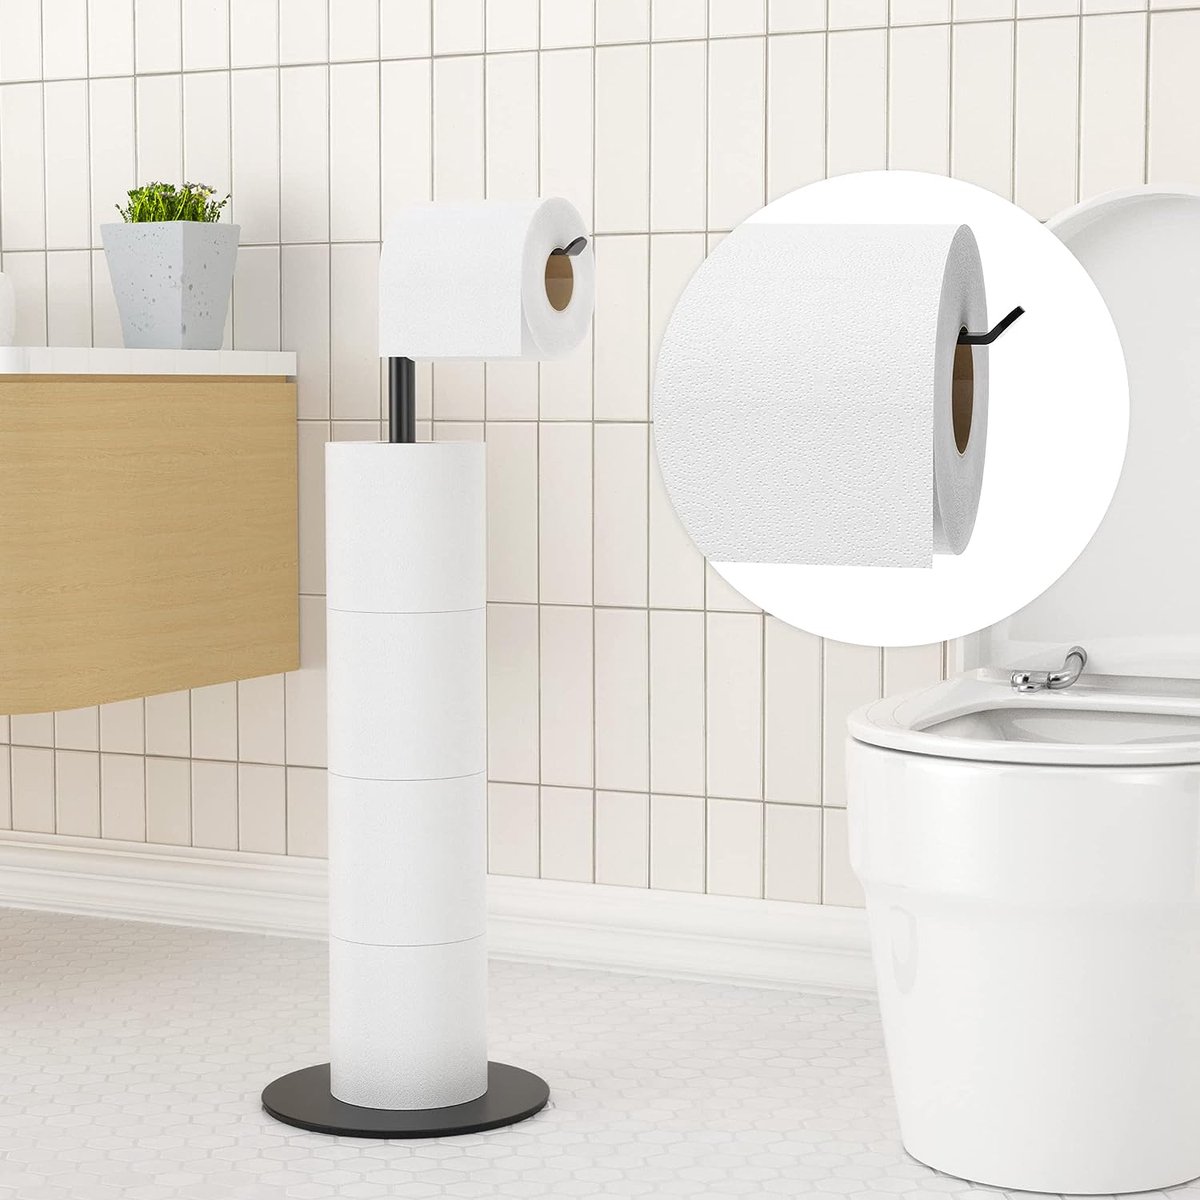 Porte-papier toilette en acier inoxydable avec brosse WC – Porte-papier  toilette avec boîte à lingettes humides, support de papier toilette avec brosse  WC, kit WC avec porte-papier toilette et brosse : 